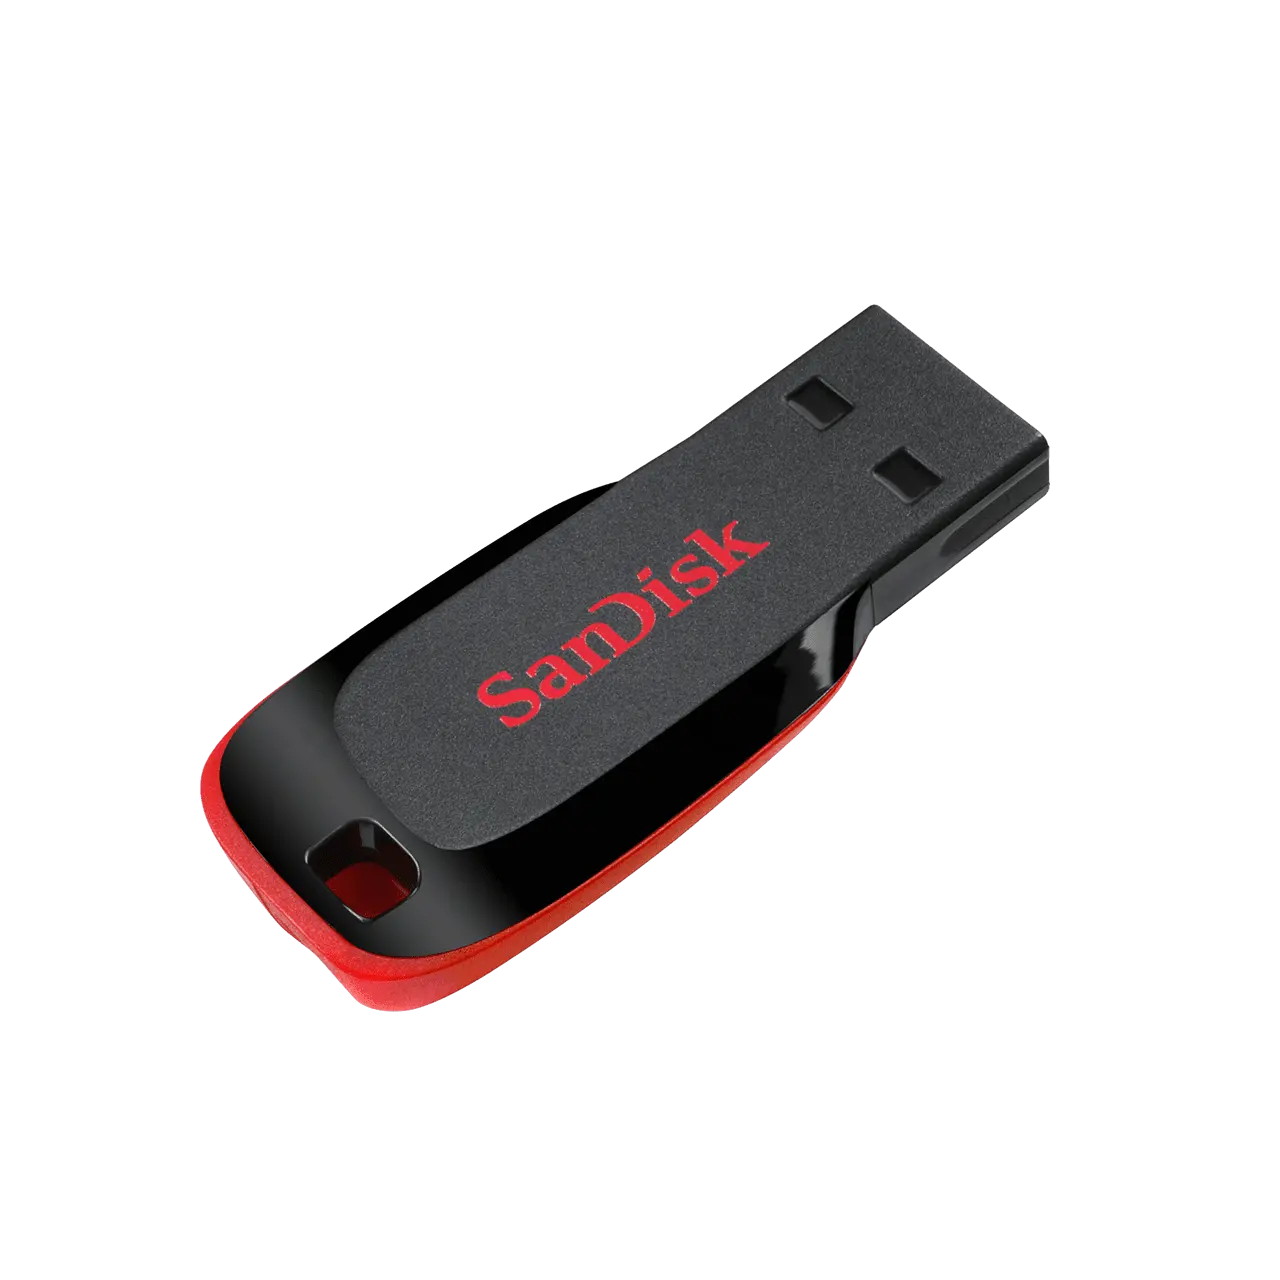 100% 원래 SanDisk Cruzer 블레이드 USB 플래시 드라이브 usb2.0 미니 펜 드라이브 32 기가바이트